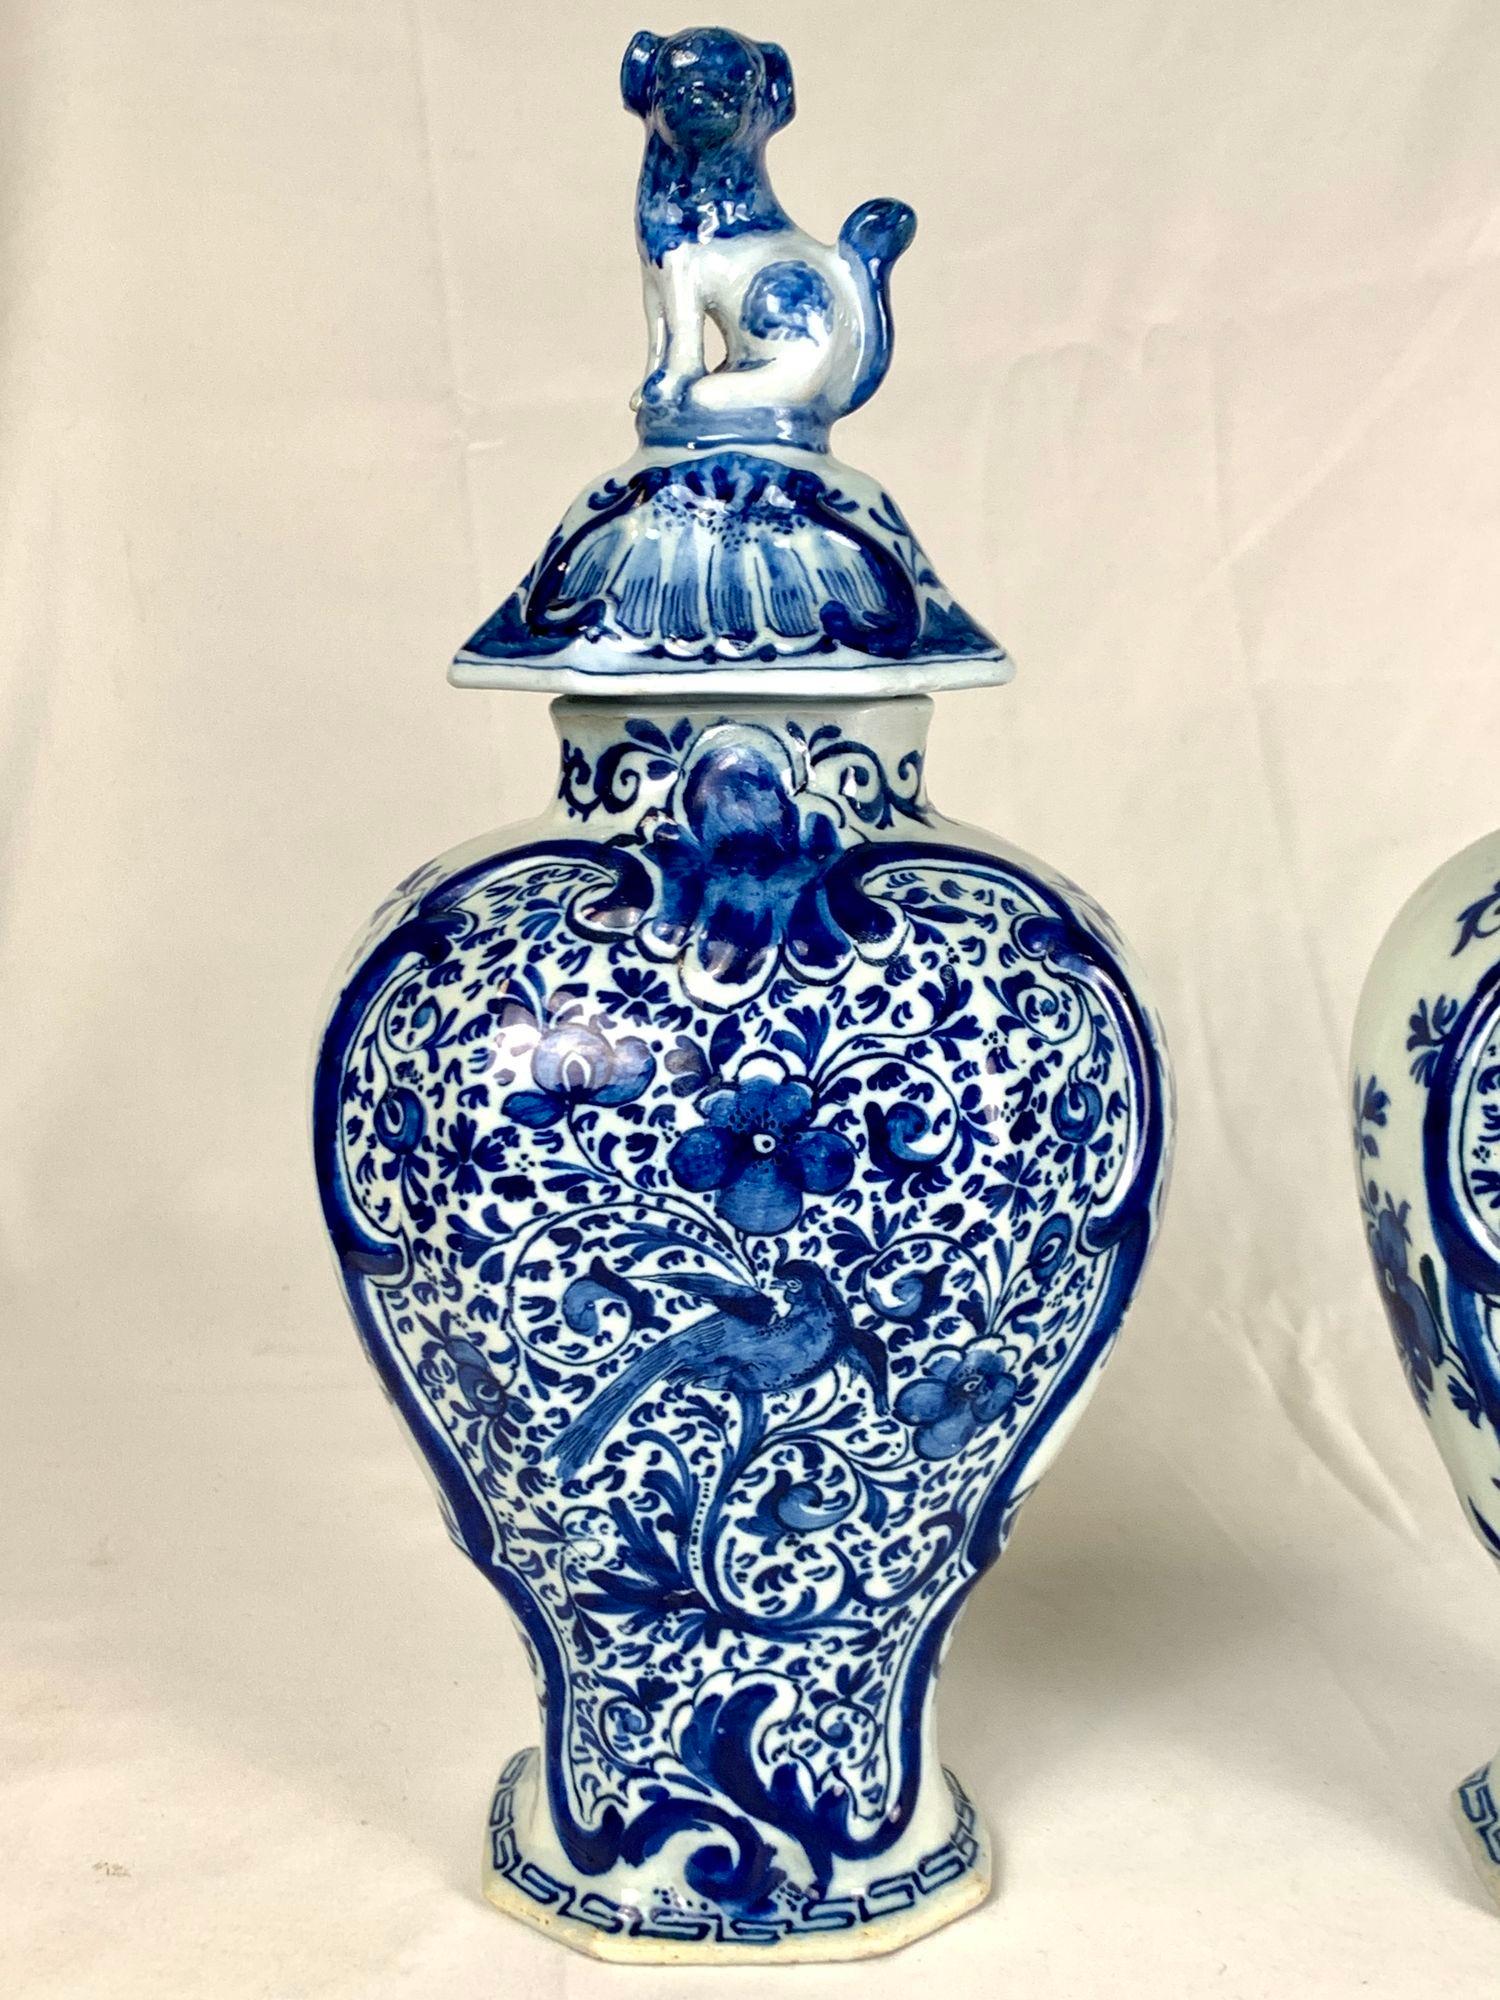 Cette magnifique paire de pots de cheminée Delft hollandais bleu et blanc a été peinte à la main à 